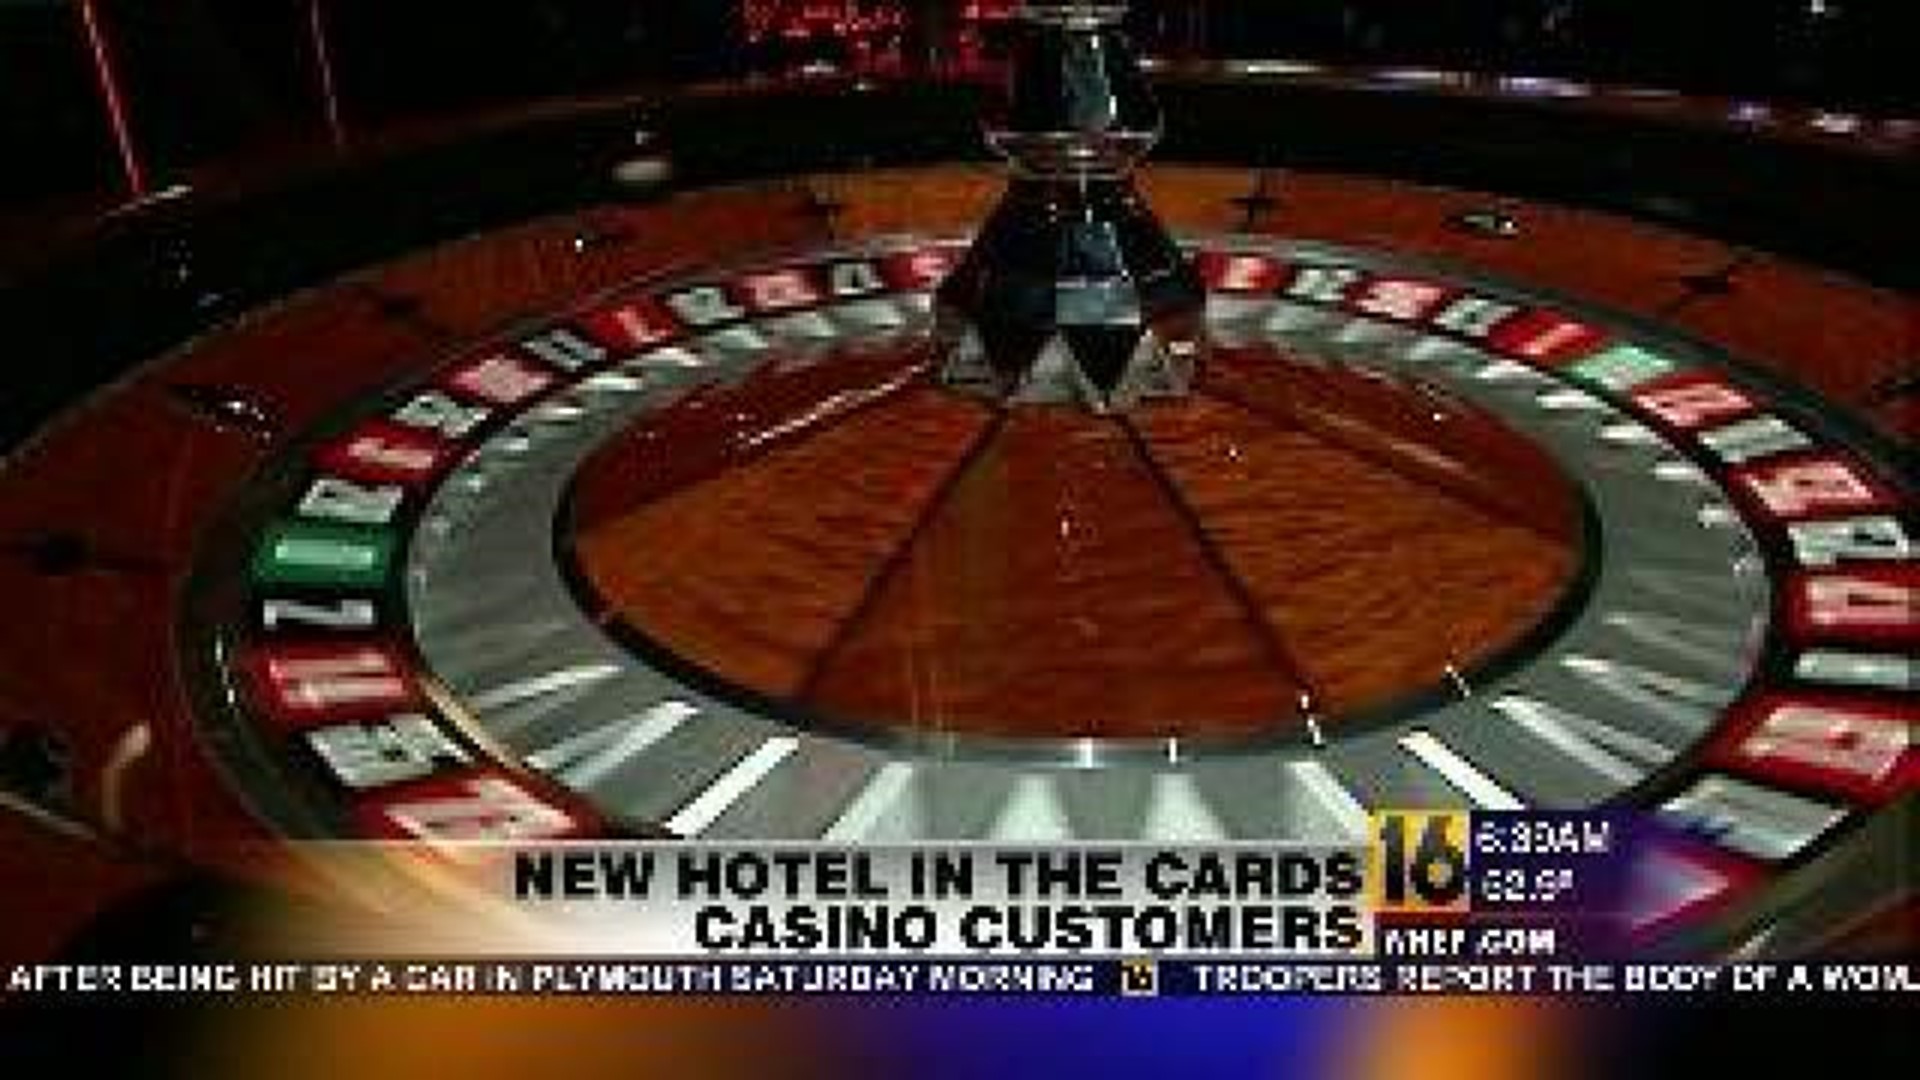 Casino Customers Await New Hotel